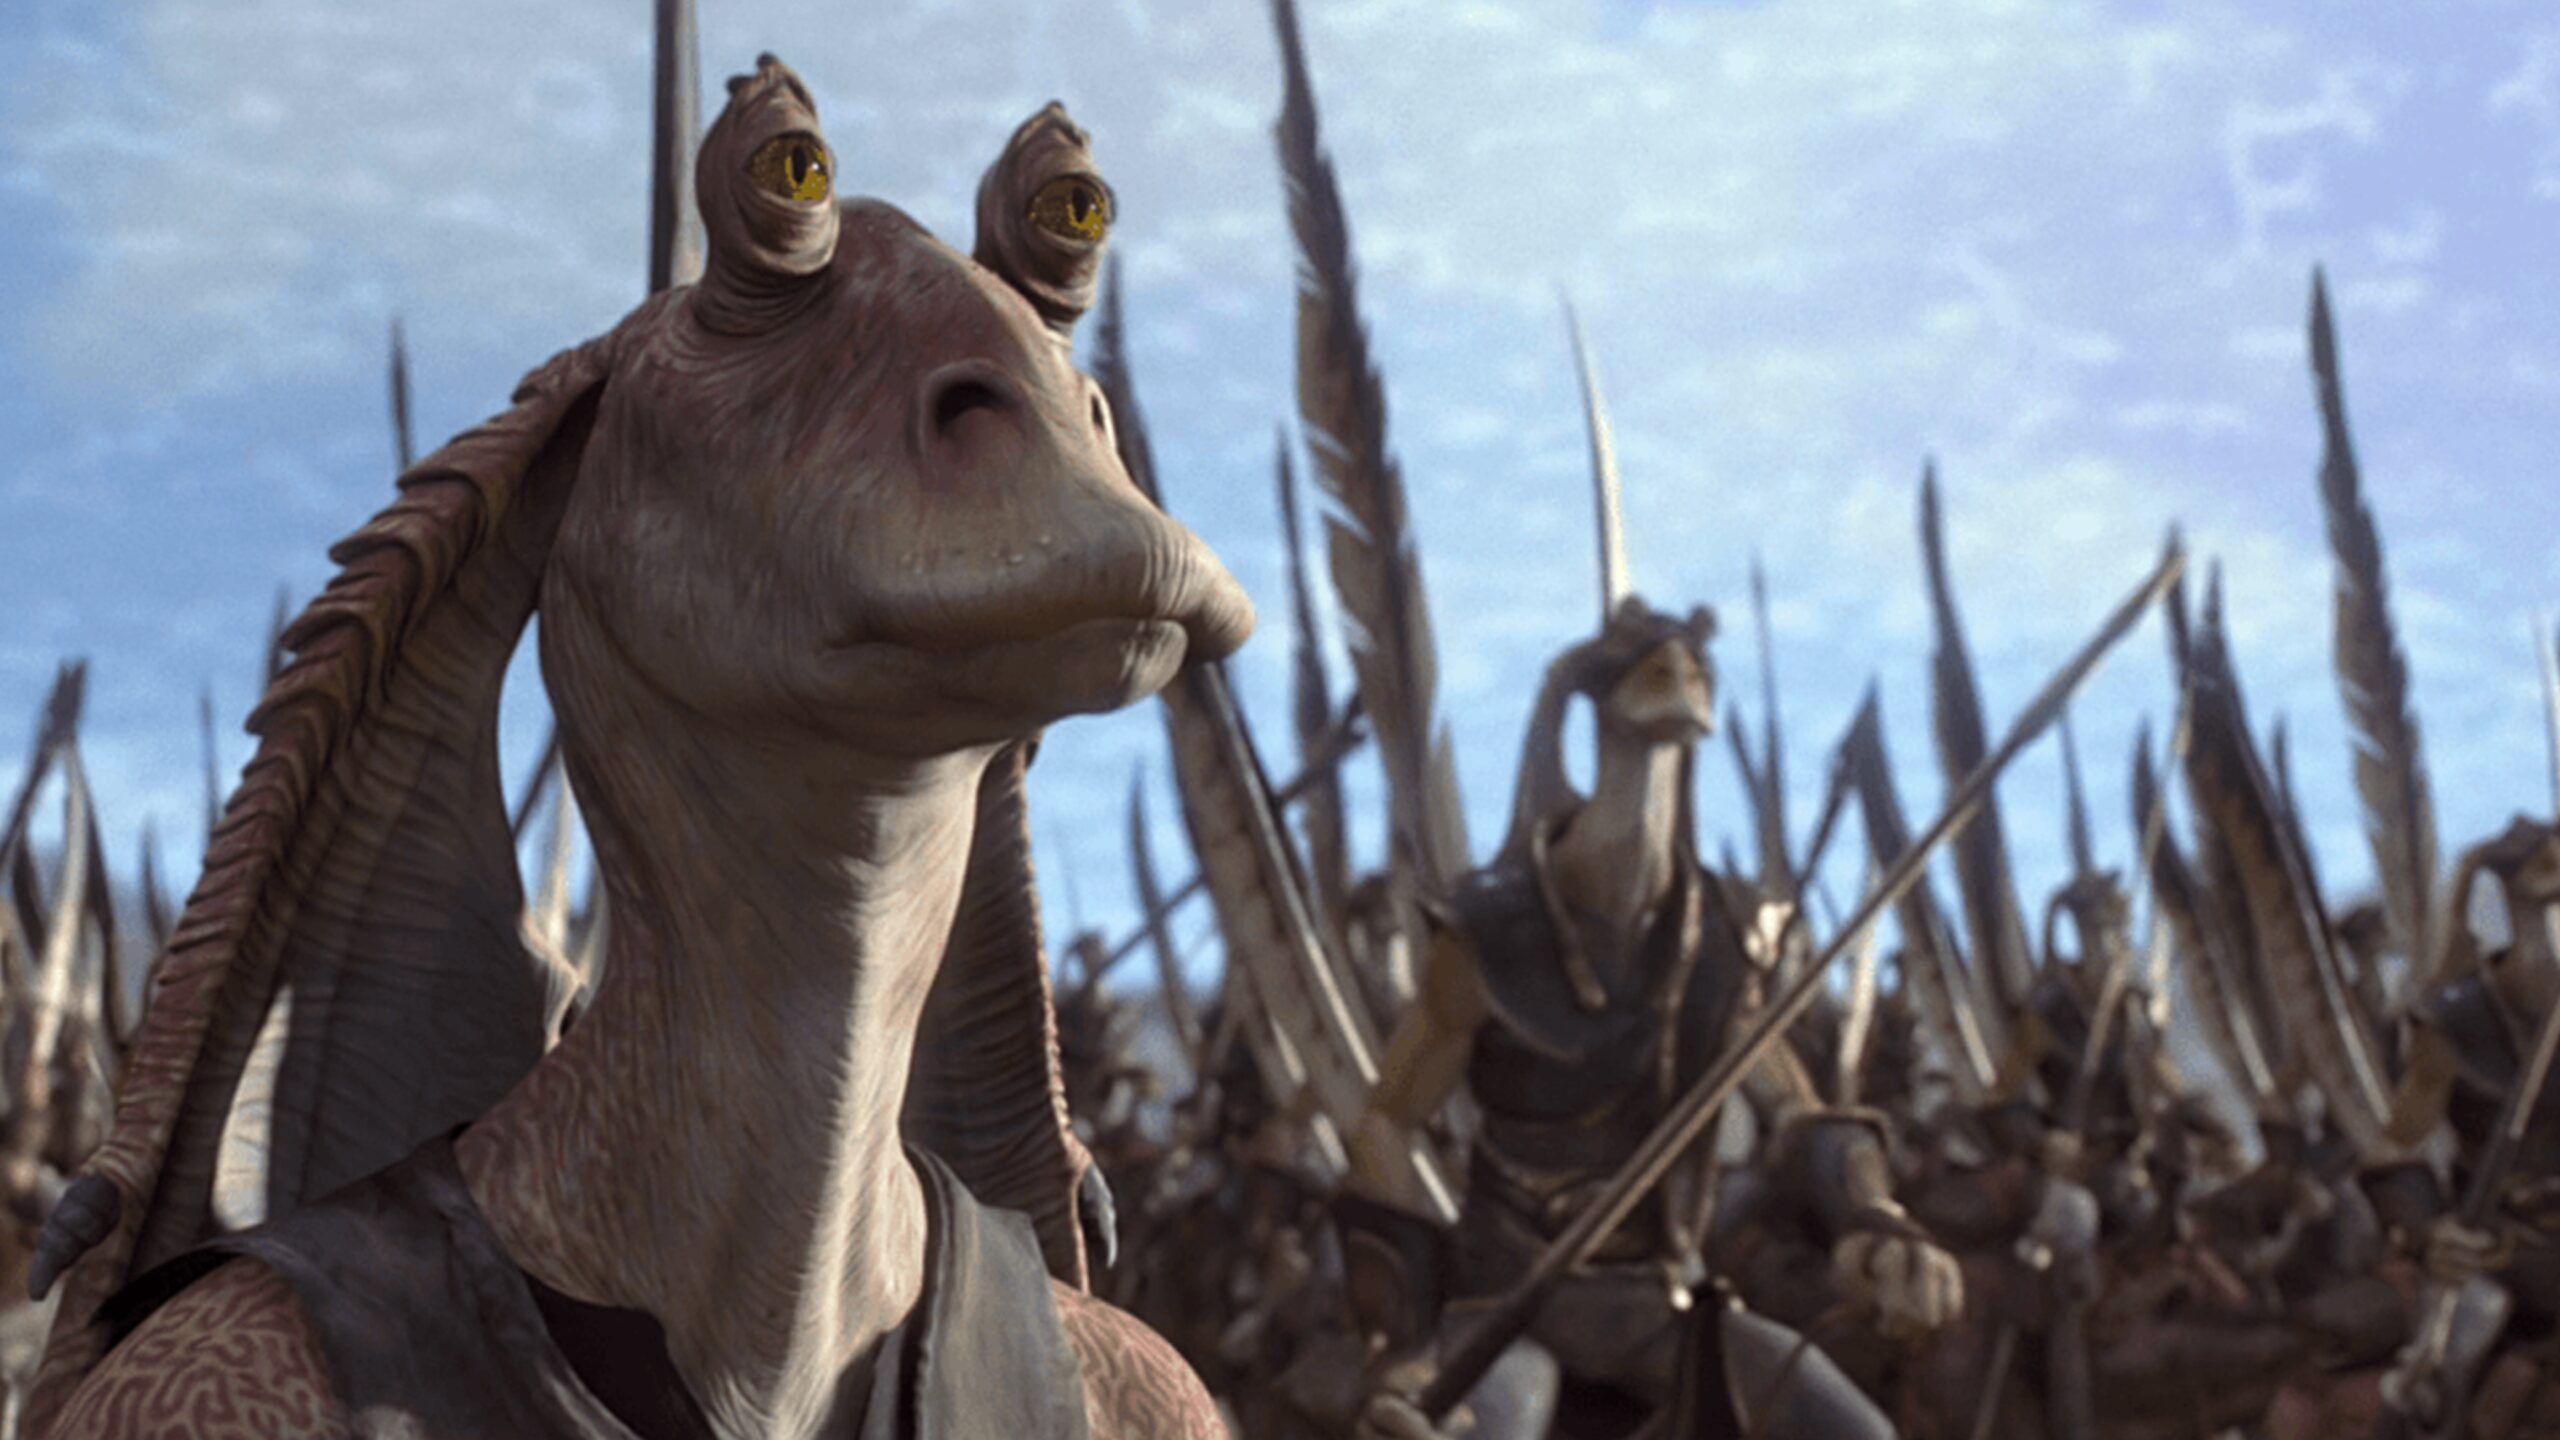 Jar Jar Binks from Star Wars standing alongside an army